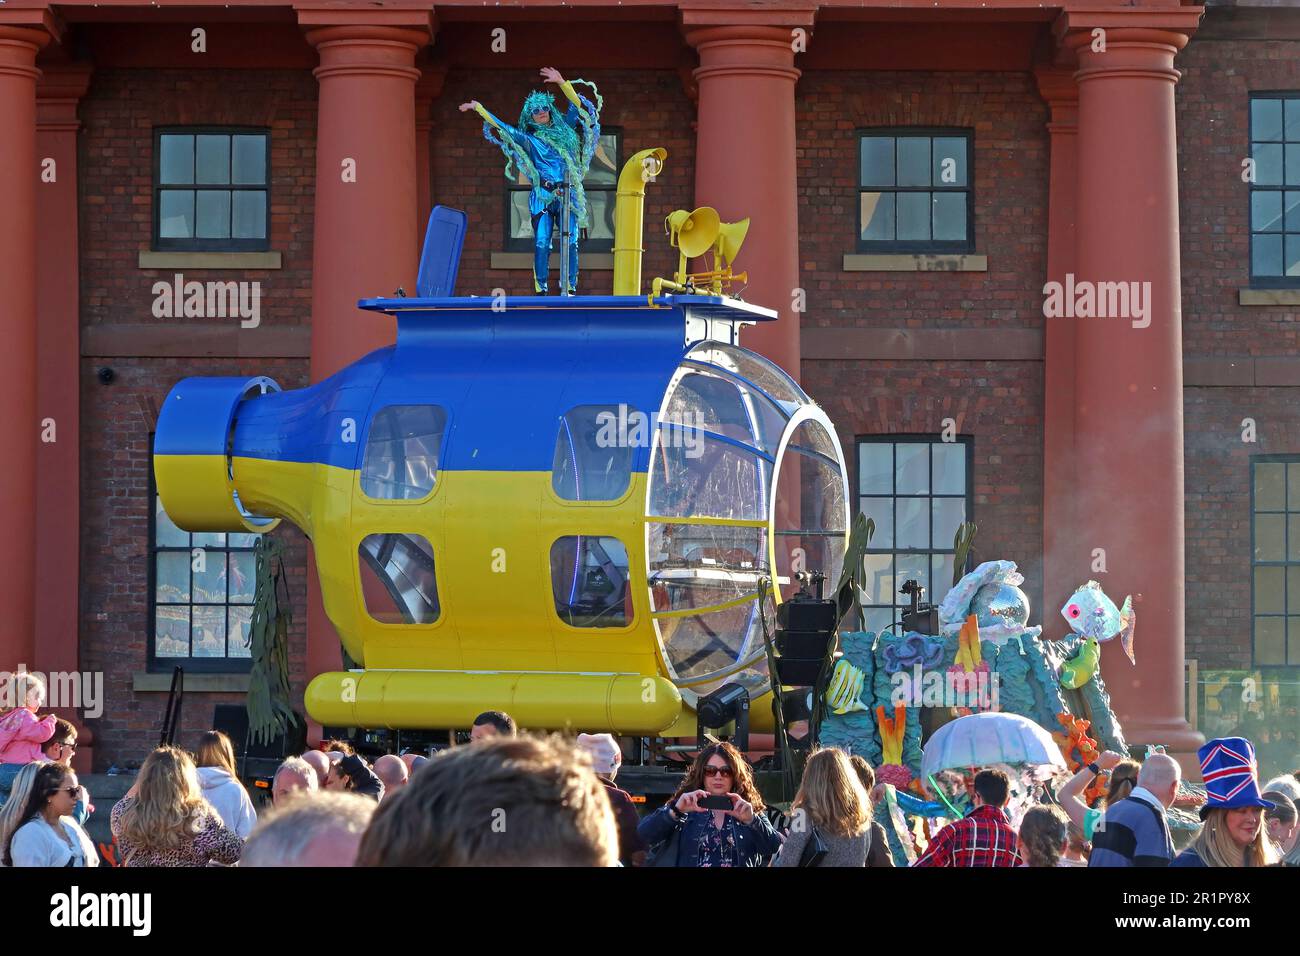 Stile Beatles giallo e blu, bandiera Ucraina DJ e ballerino sottomarino colorato, Royal Albert Dock, Pier Head, Liverpool, Merseyside, INGHILTERRA, REGNO UNITO,L3 4AF Foto Stock